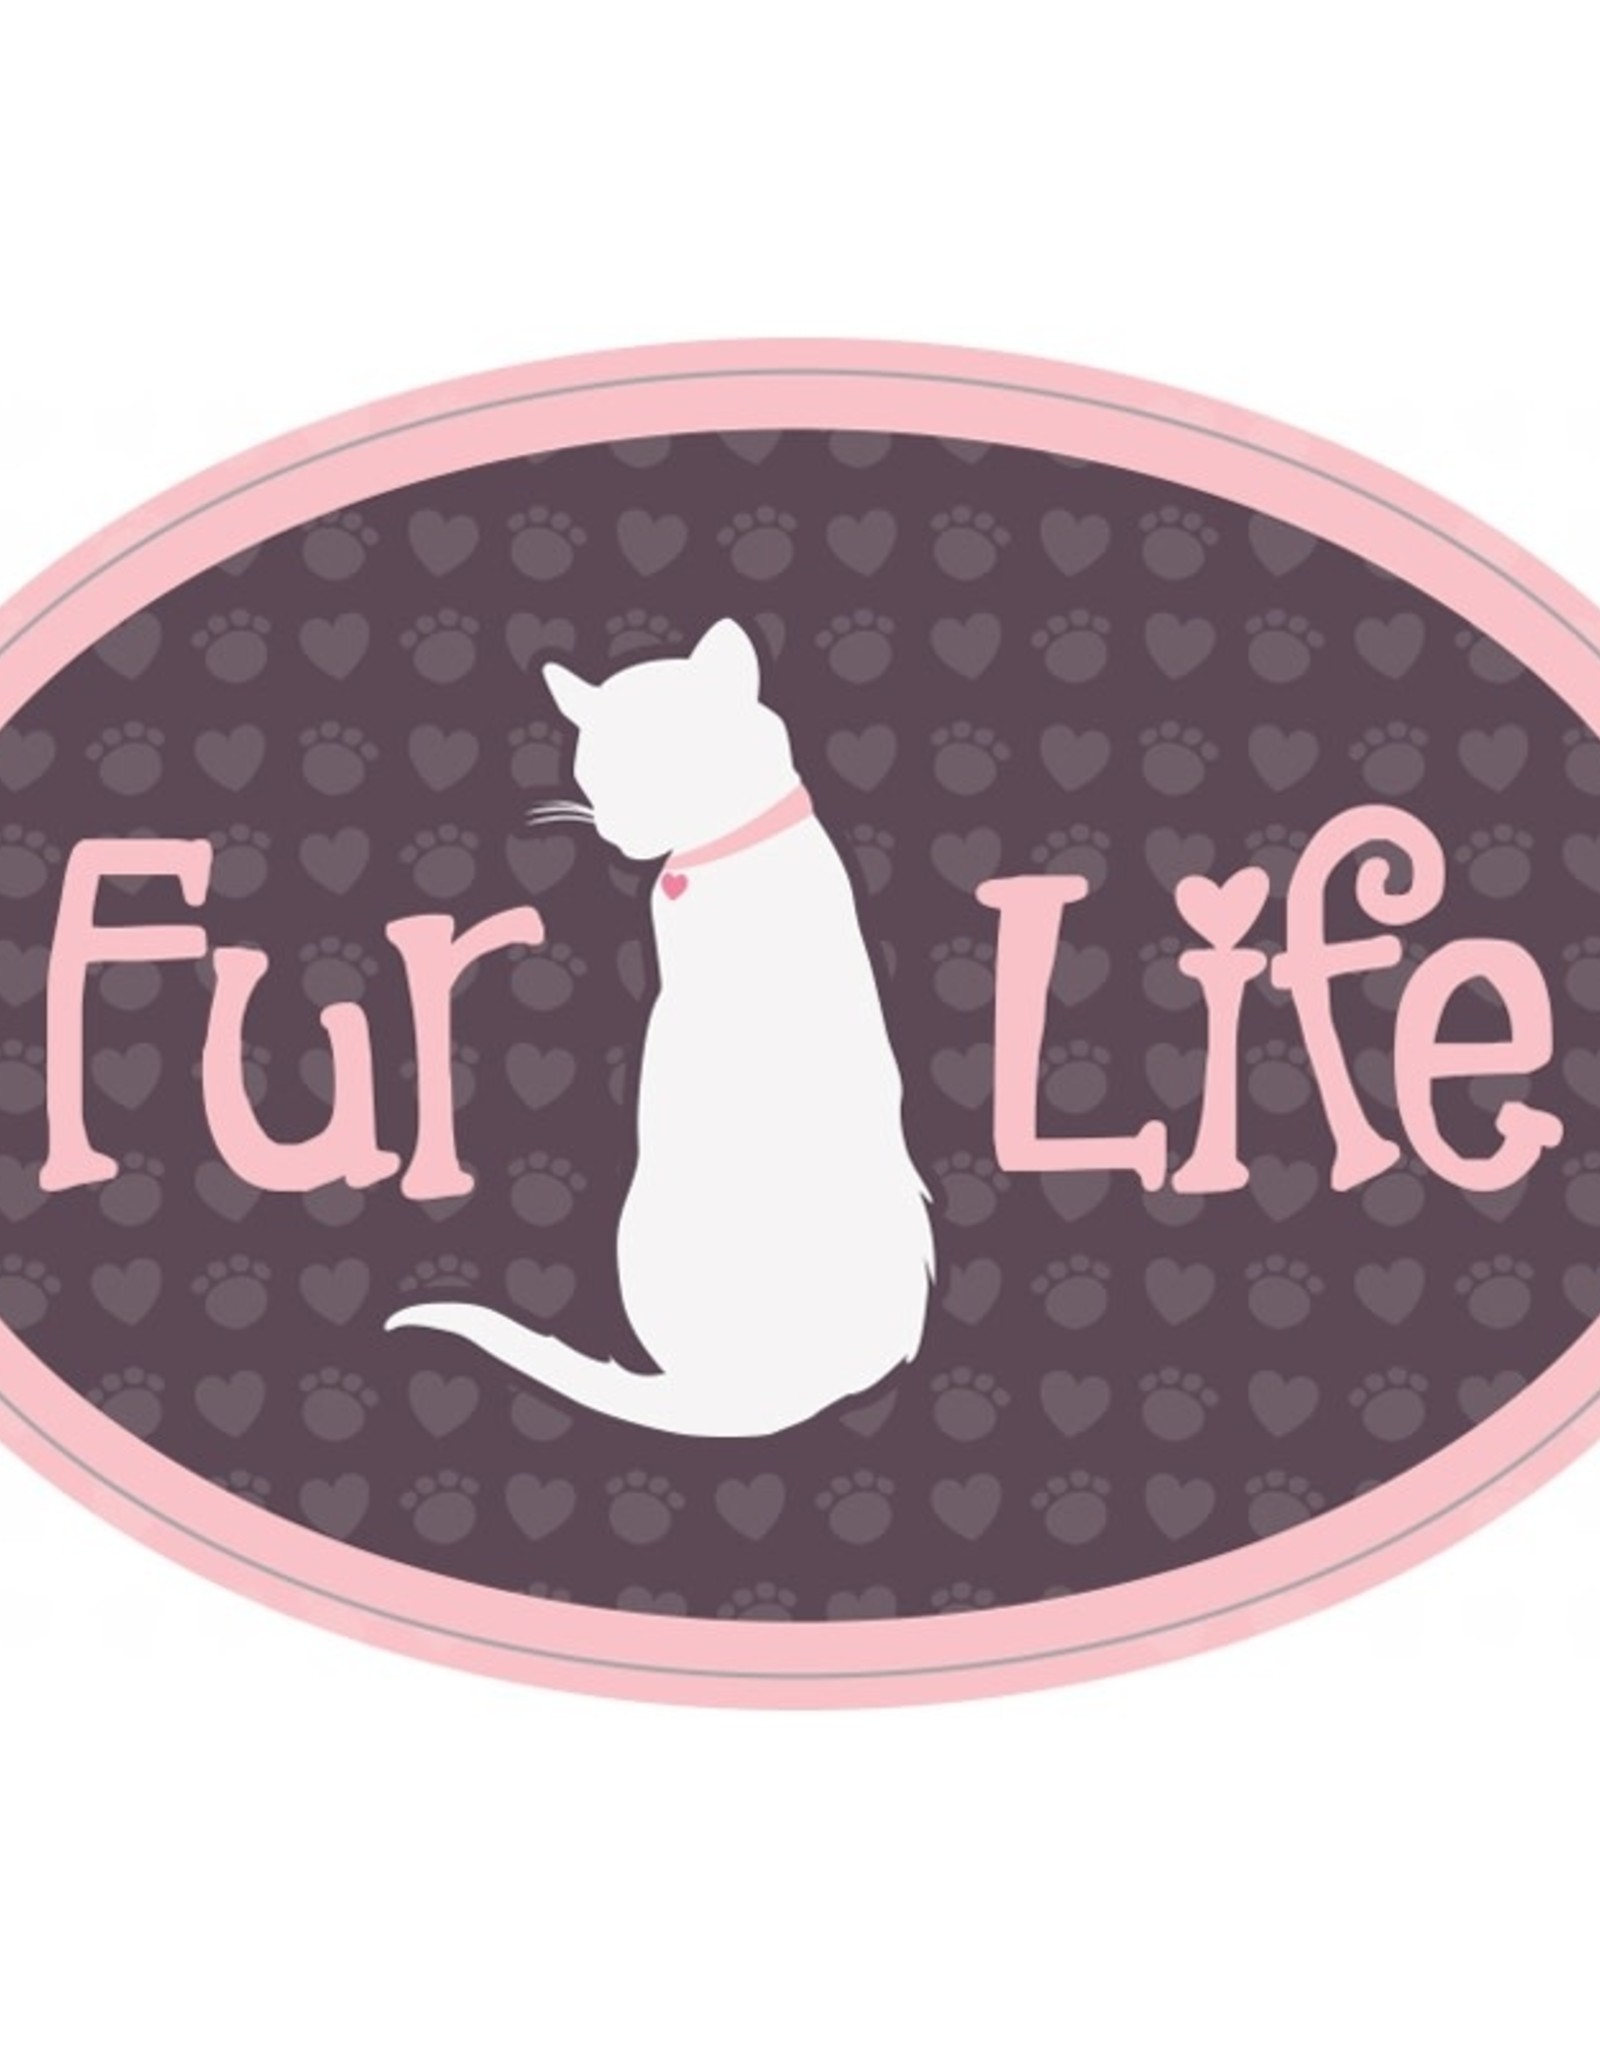 Dog Speak 3" Decal Fur Life (Cat)